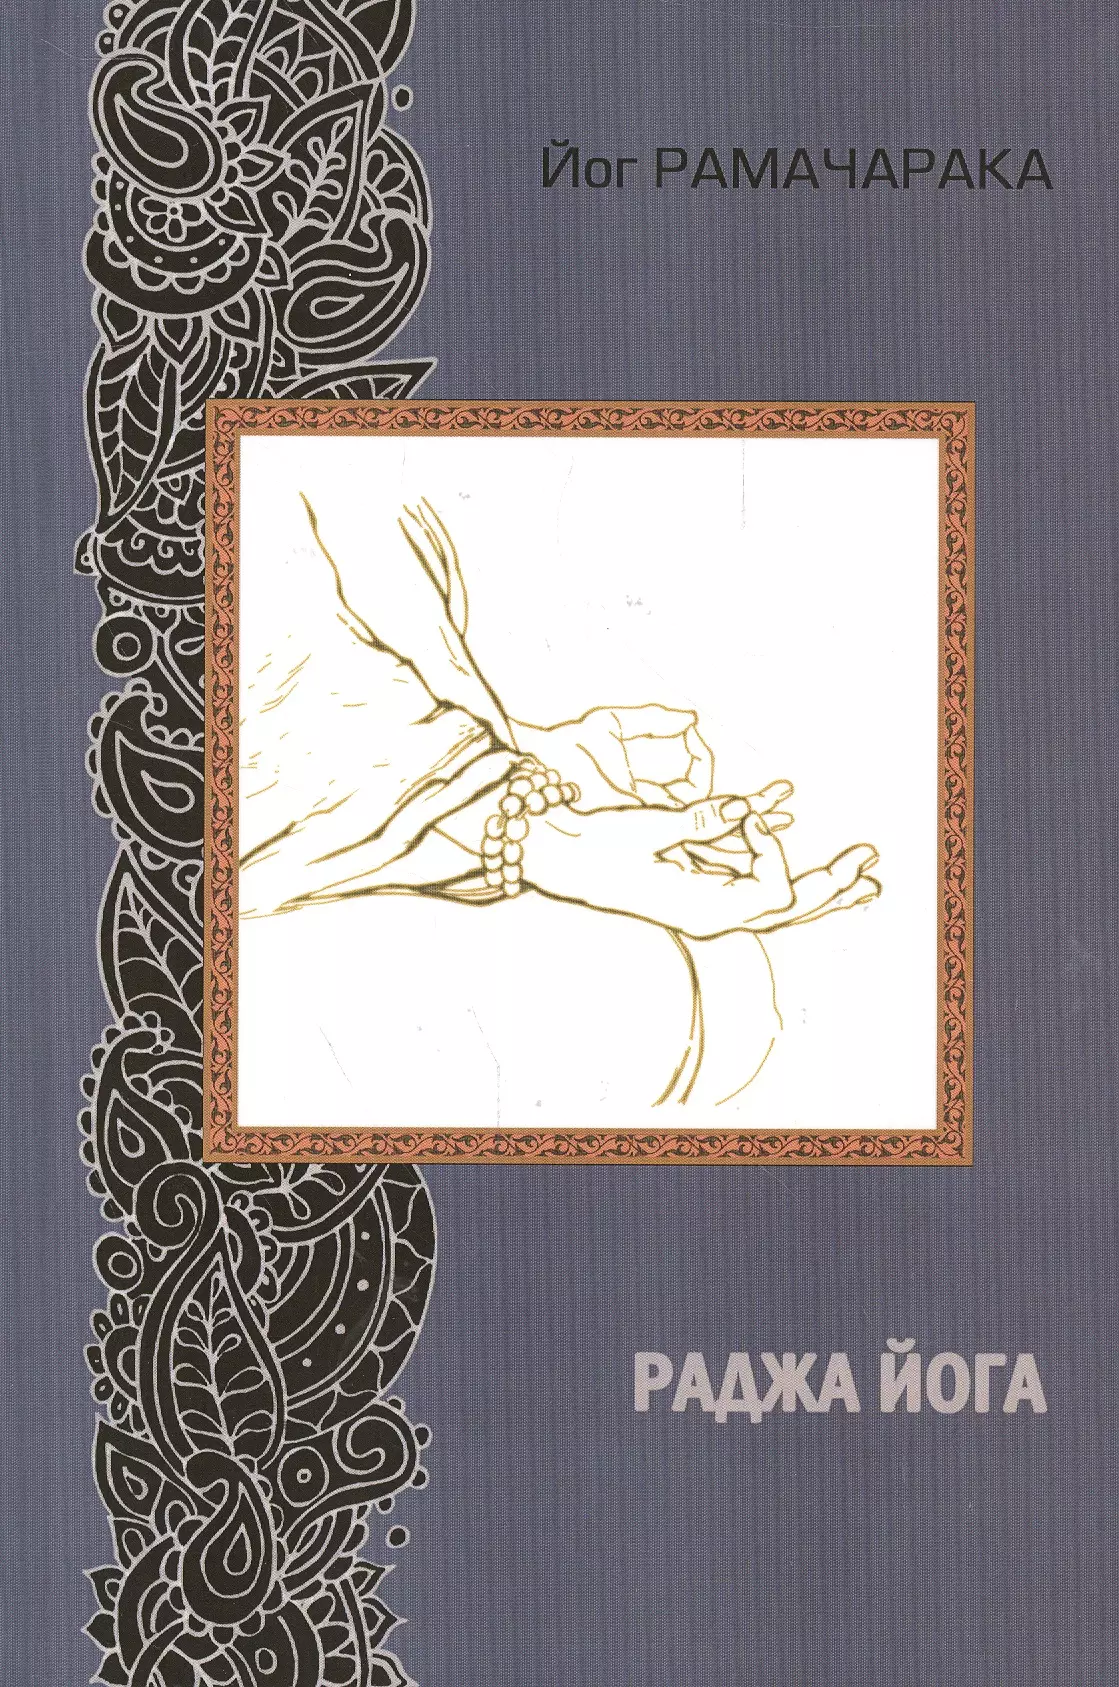 хатха йога 8 е издание йогийская философия физического благосостояния человека рамачарака йог Йог Рамачарака Раджа йога. 2-е издание